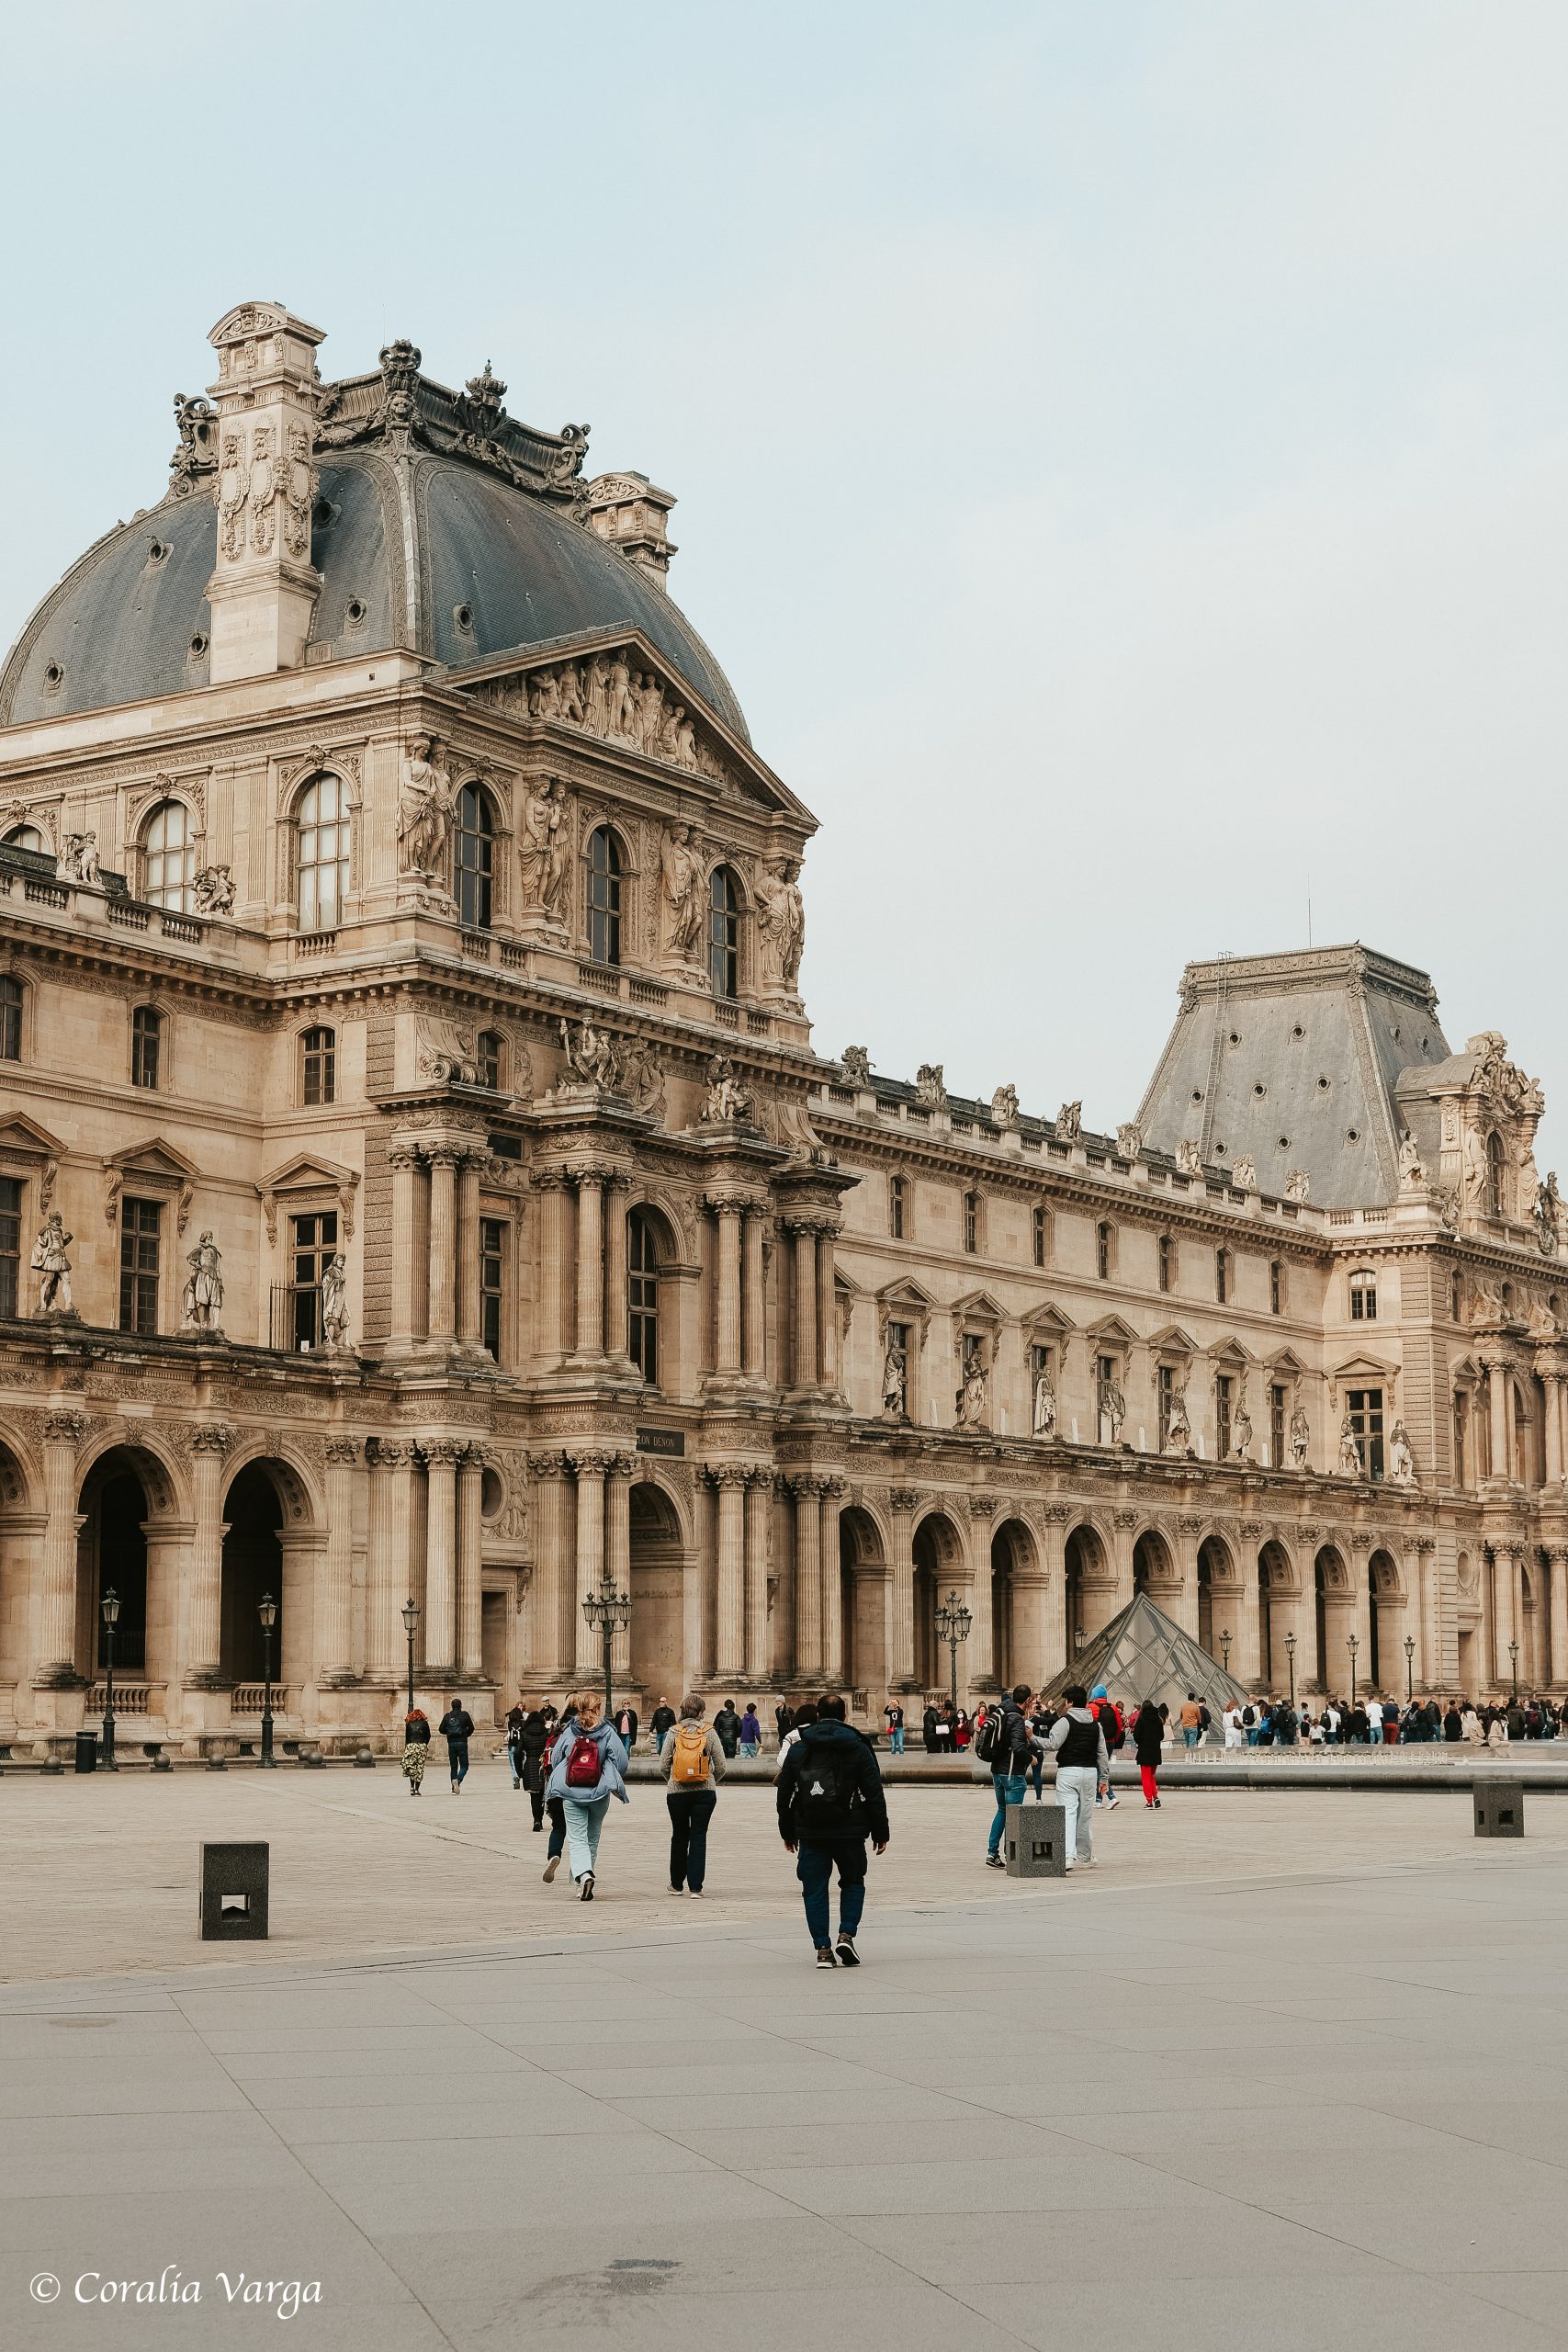 Louvre museum building